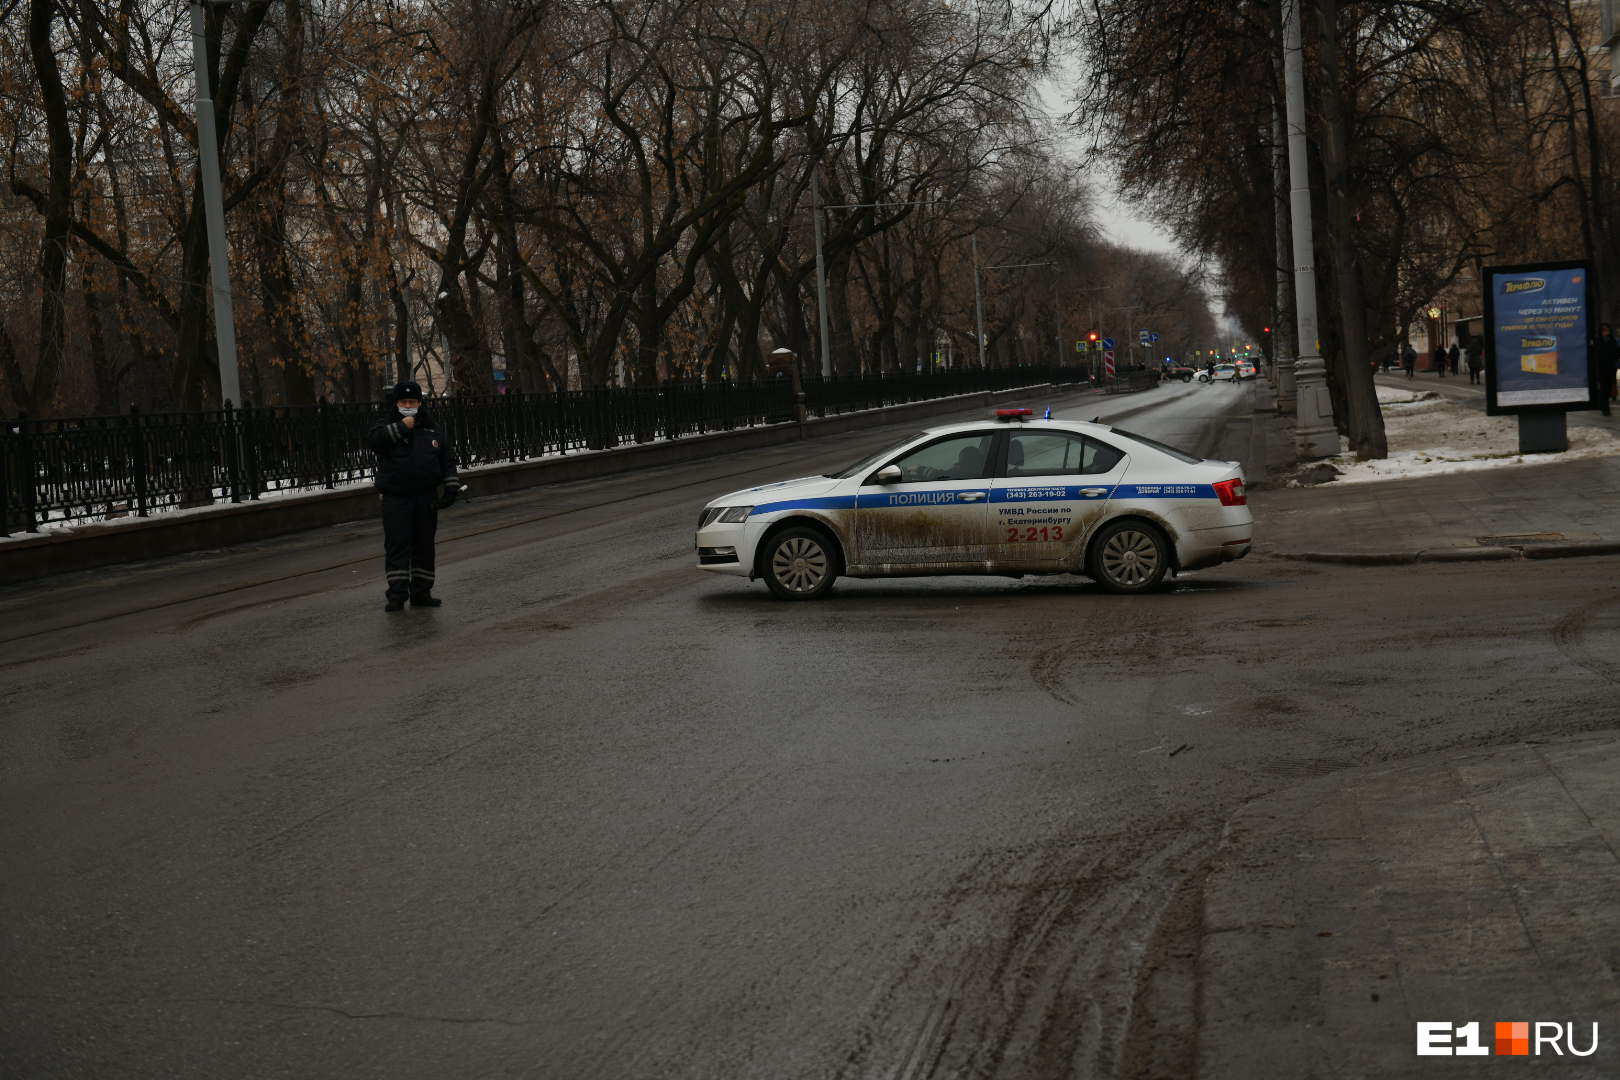 Почему перекрыли краснодар. Екатеринбург Машинная перекрыта ГИБДД. Полиция перекрыла дорогу журналистам.